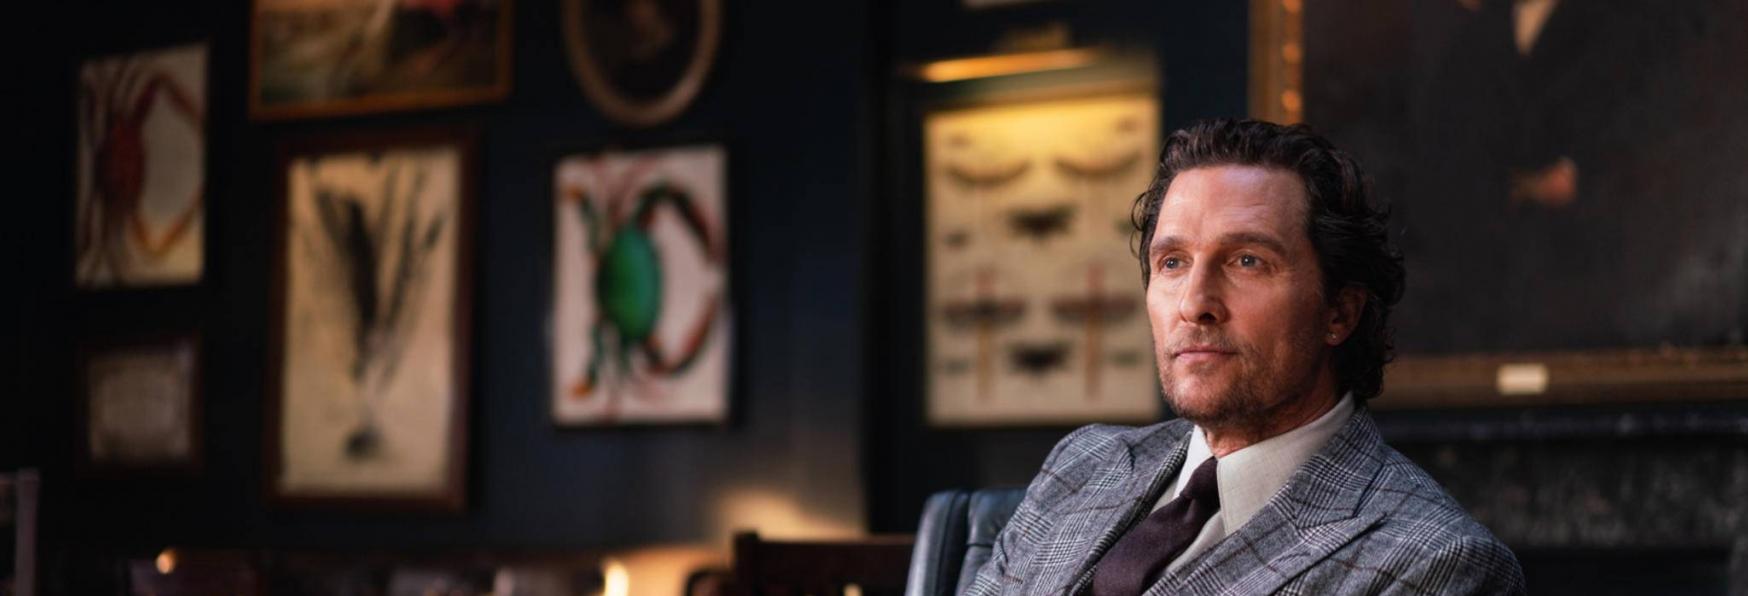 The Gentlemen: il Film di Guy Ritchie diventerà una Serie TV di Netflix